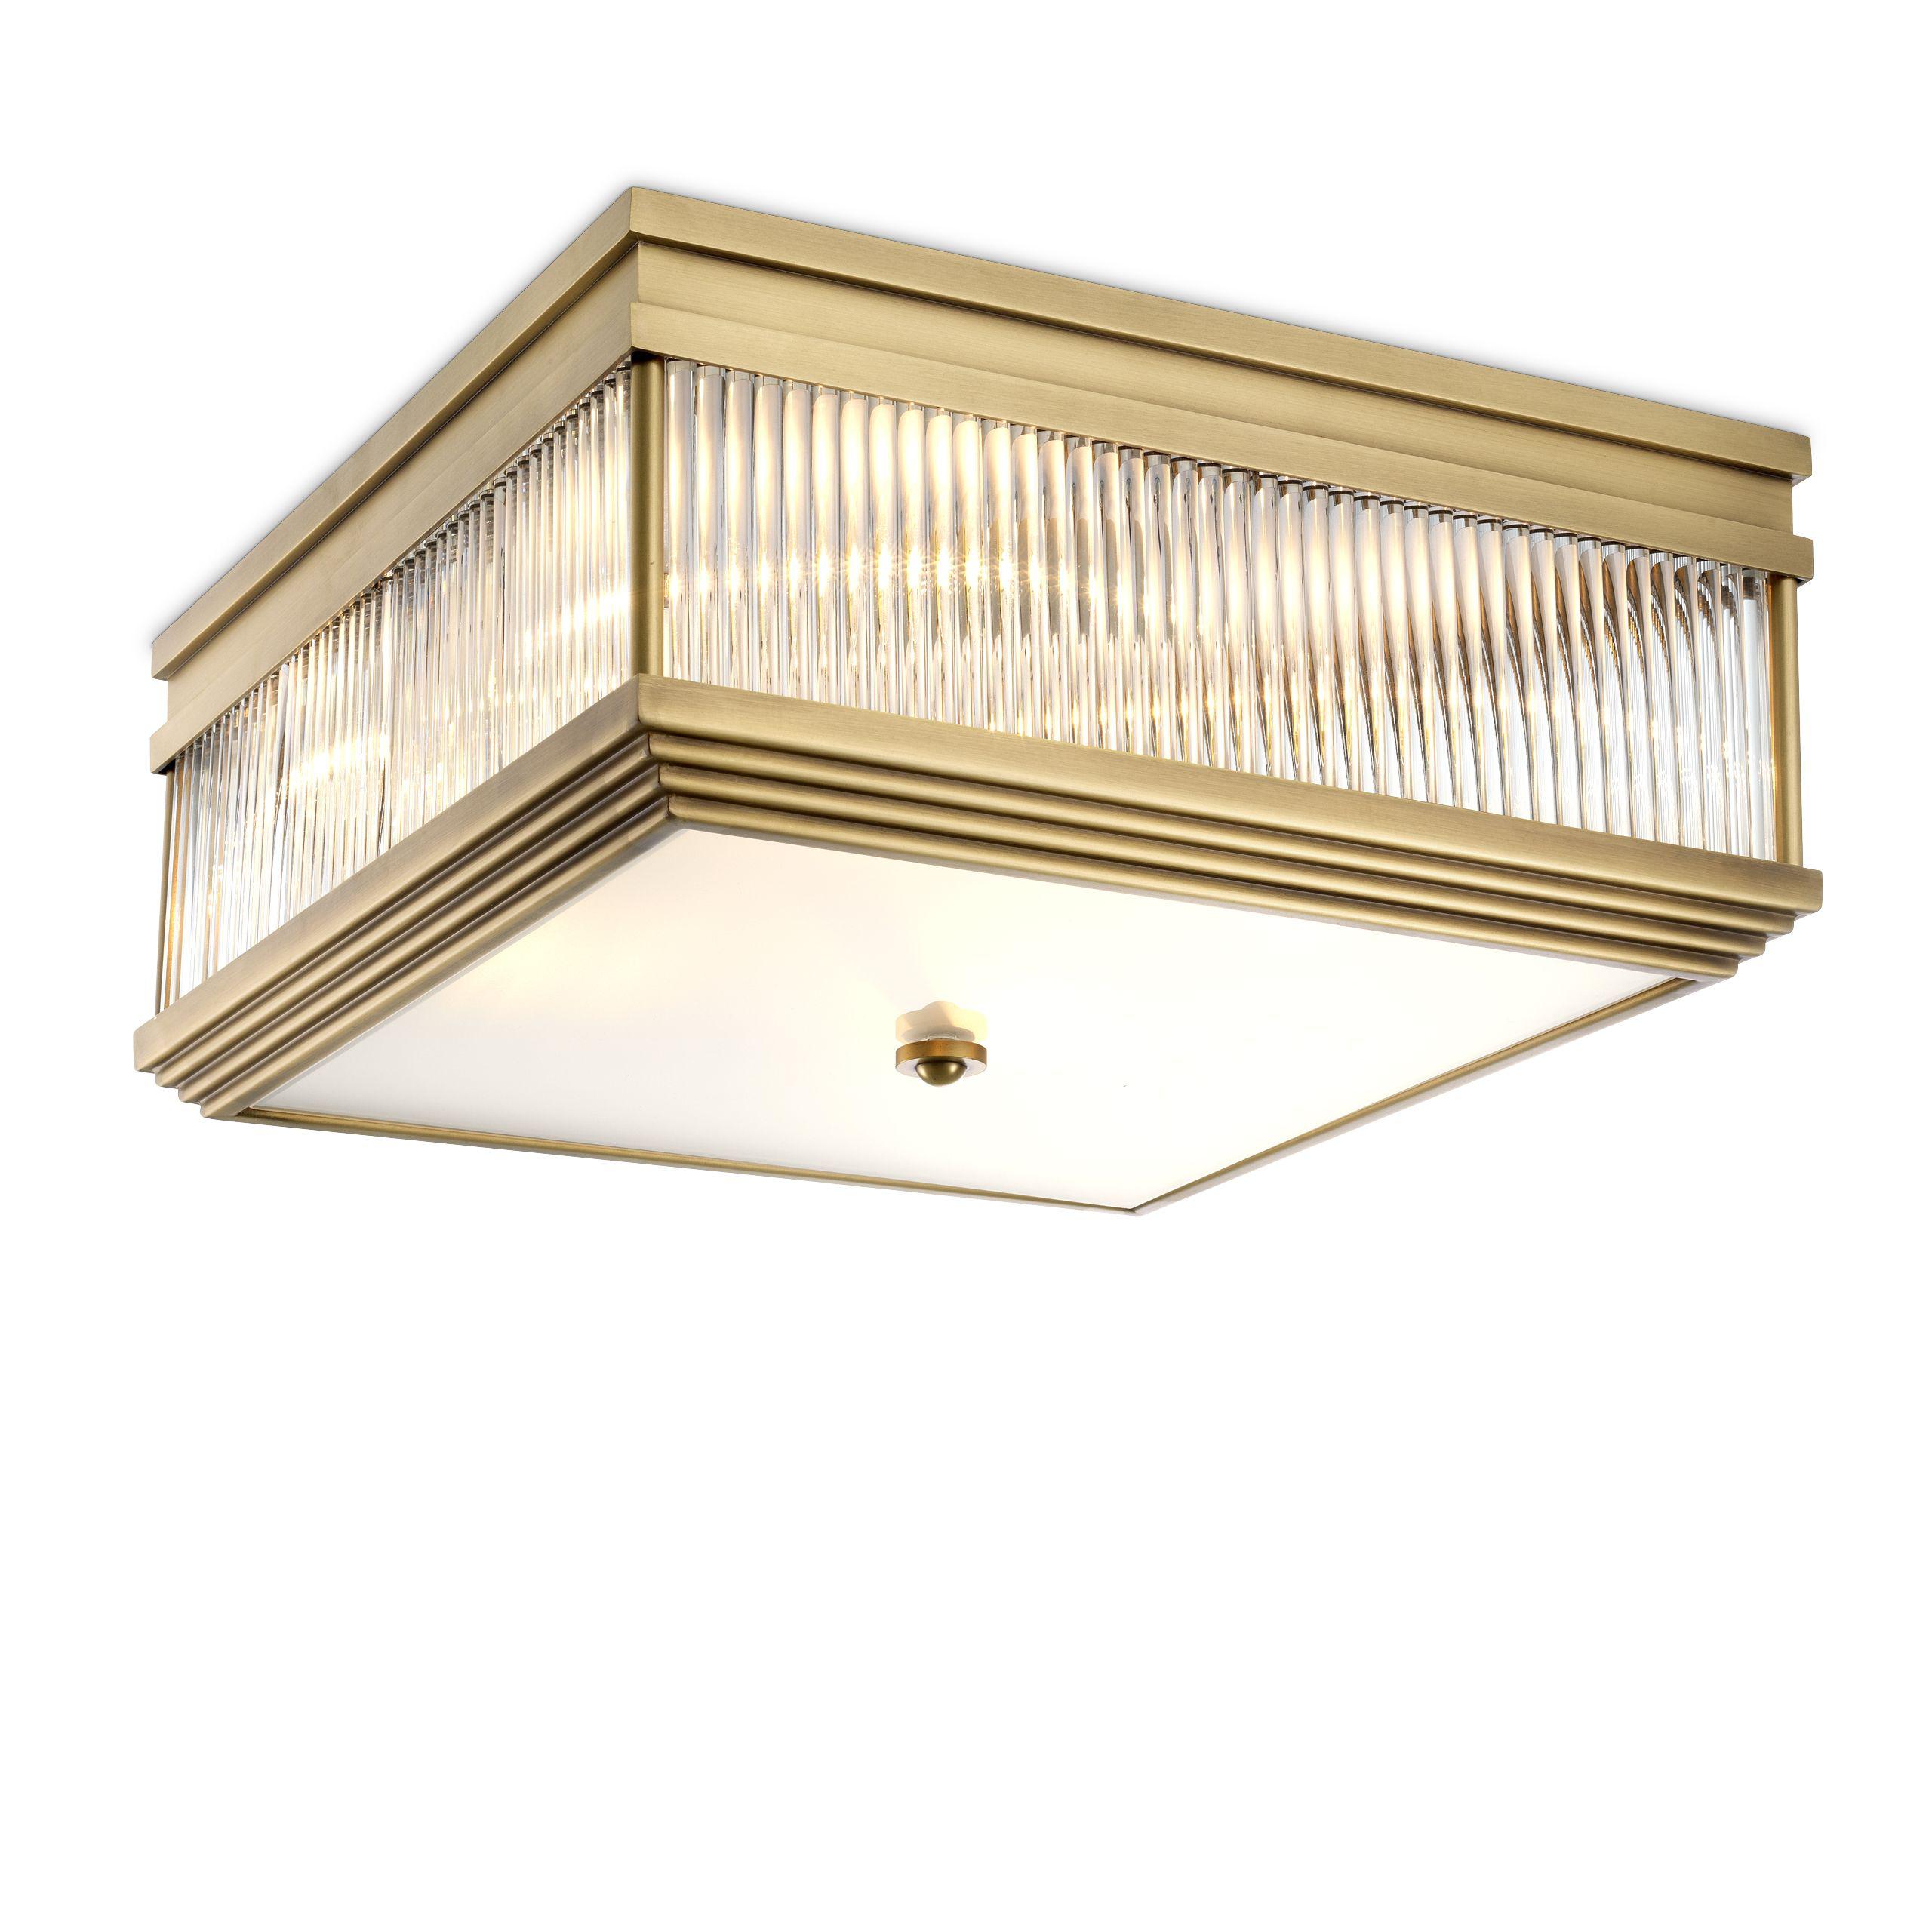 Купить Накладной светильник Ceiling Lamp Marly в интернет-магазине roooms.ru